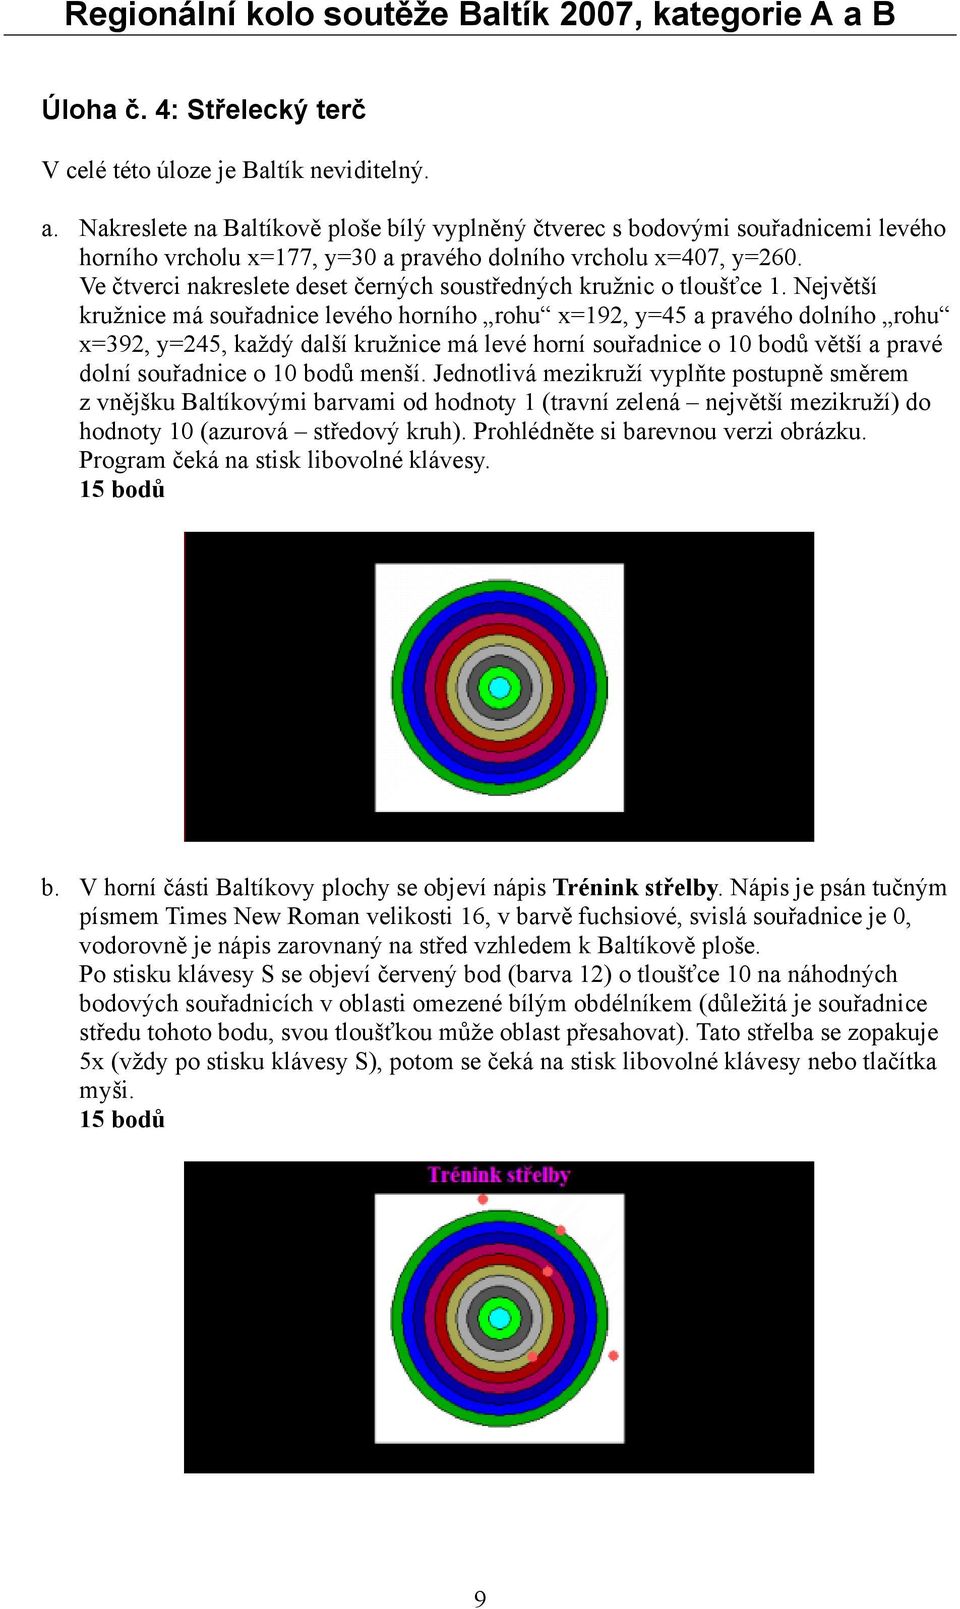 Ve čtverci nakreslete deset černých soustředných kružnic o tloušťce 1.